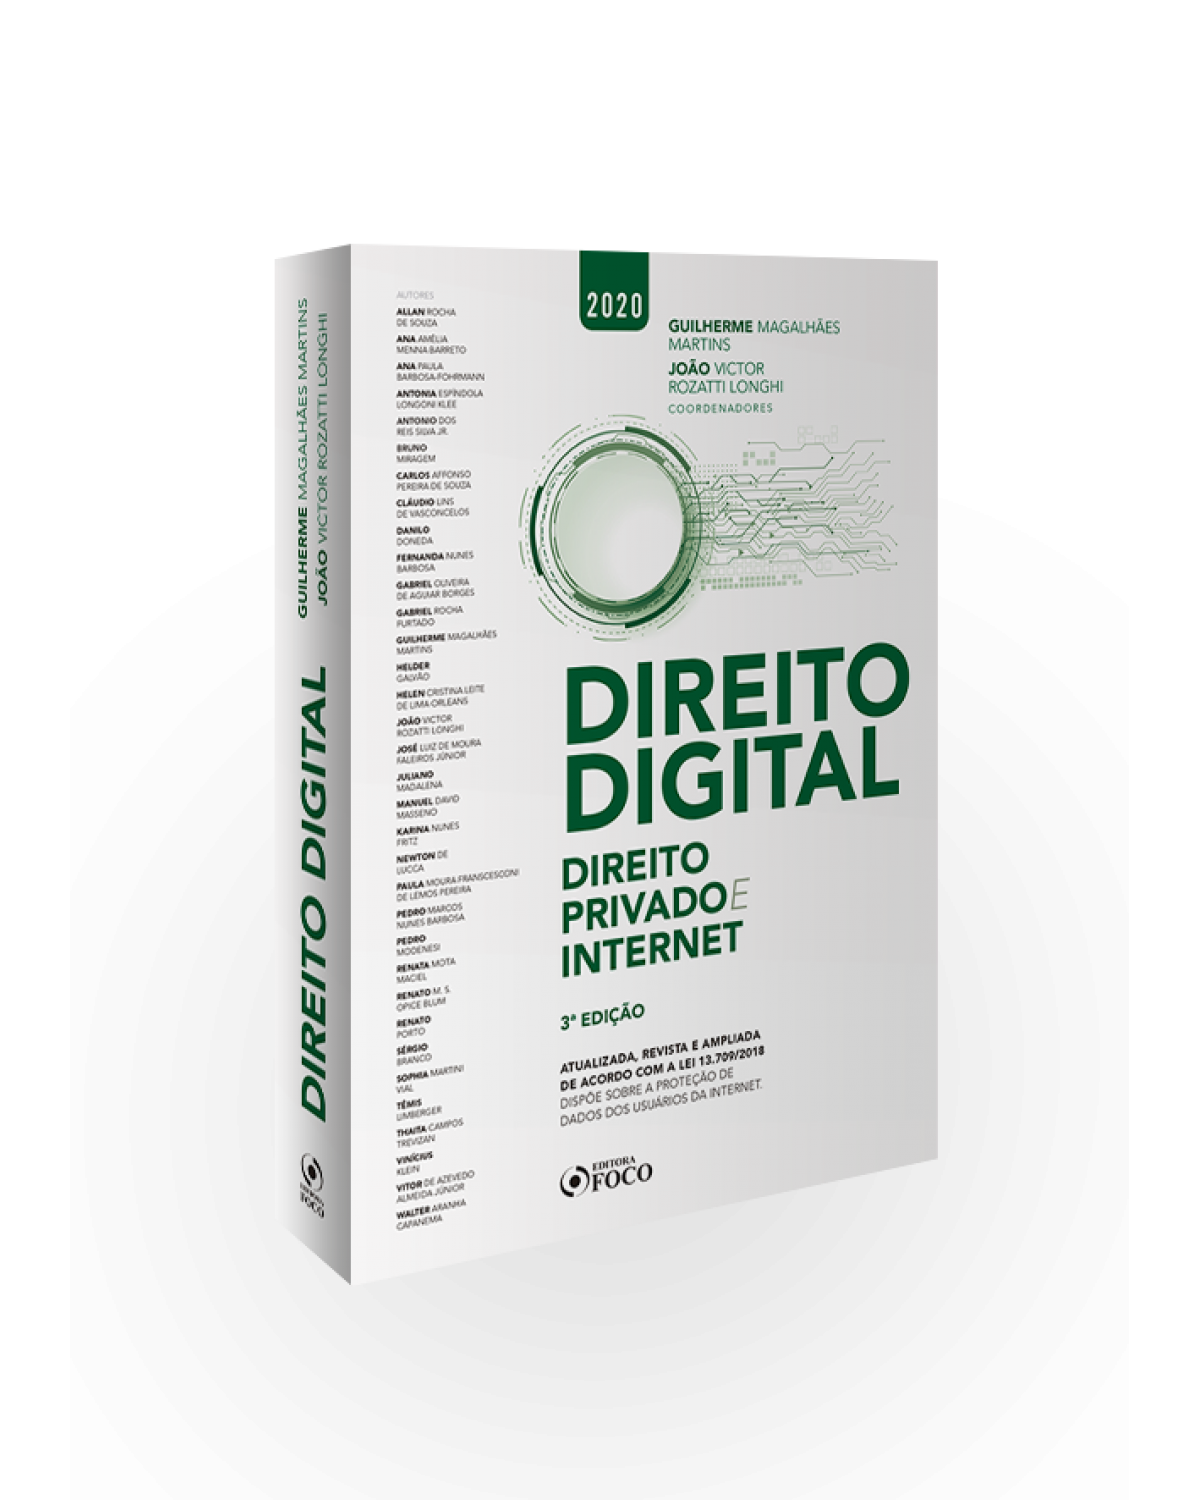 Direito digital: Direito privado e internet - 3ª Edição | 2020